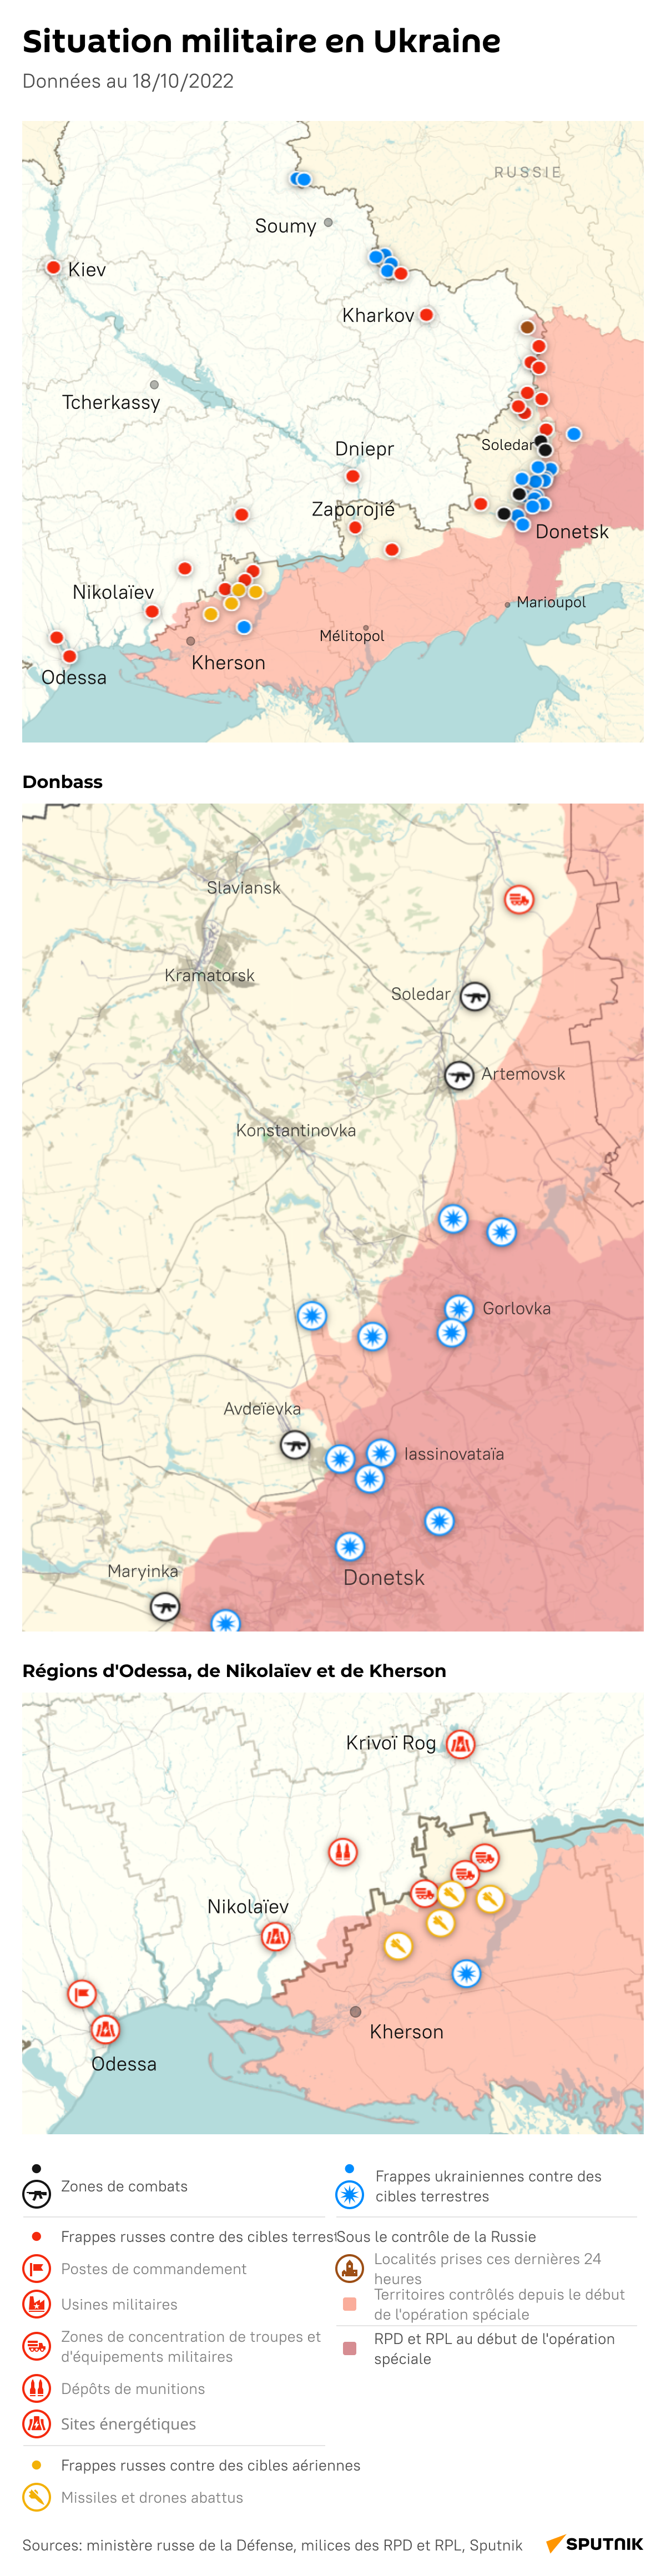 Situation militaire en Ukraine, données au 18 octobre 2022 - Sputnik Afrique